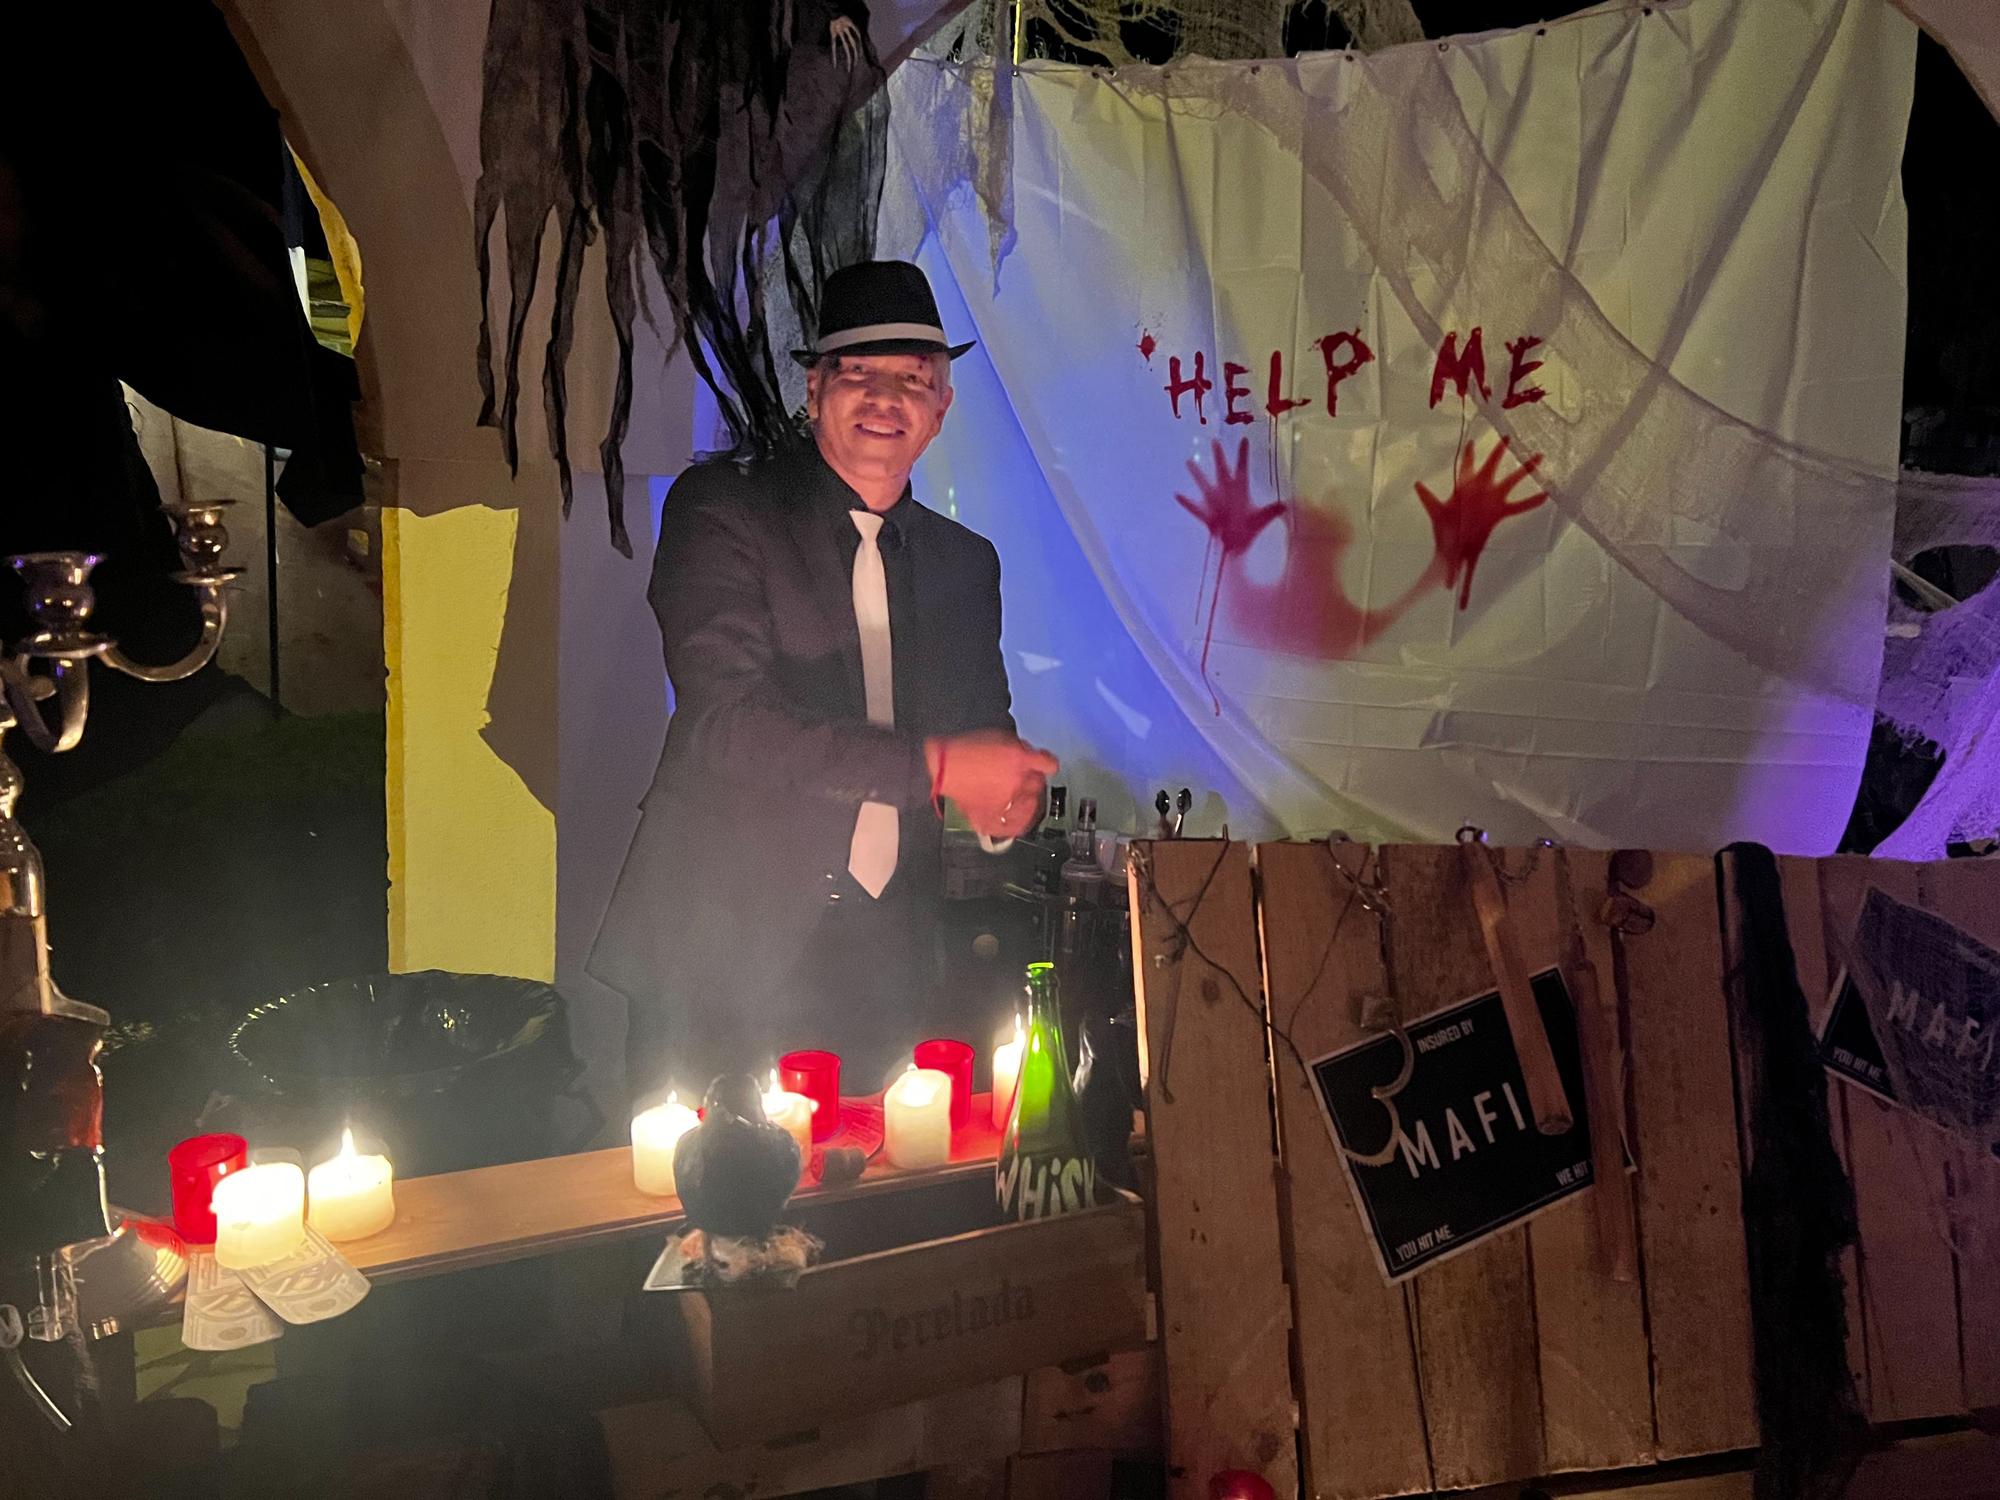 So sah es zu Halloween im Horrorhaus der "Goodbye Deutschland"-Auswanderin auf Mallorca aus